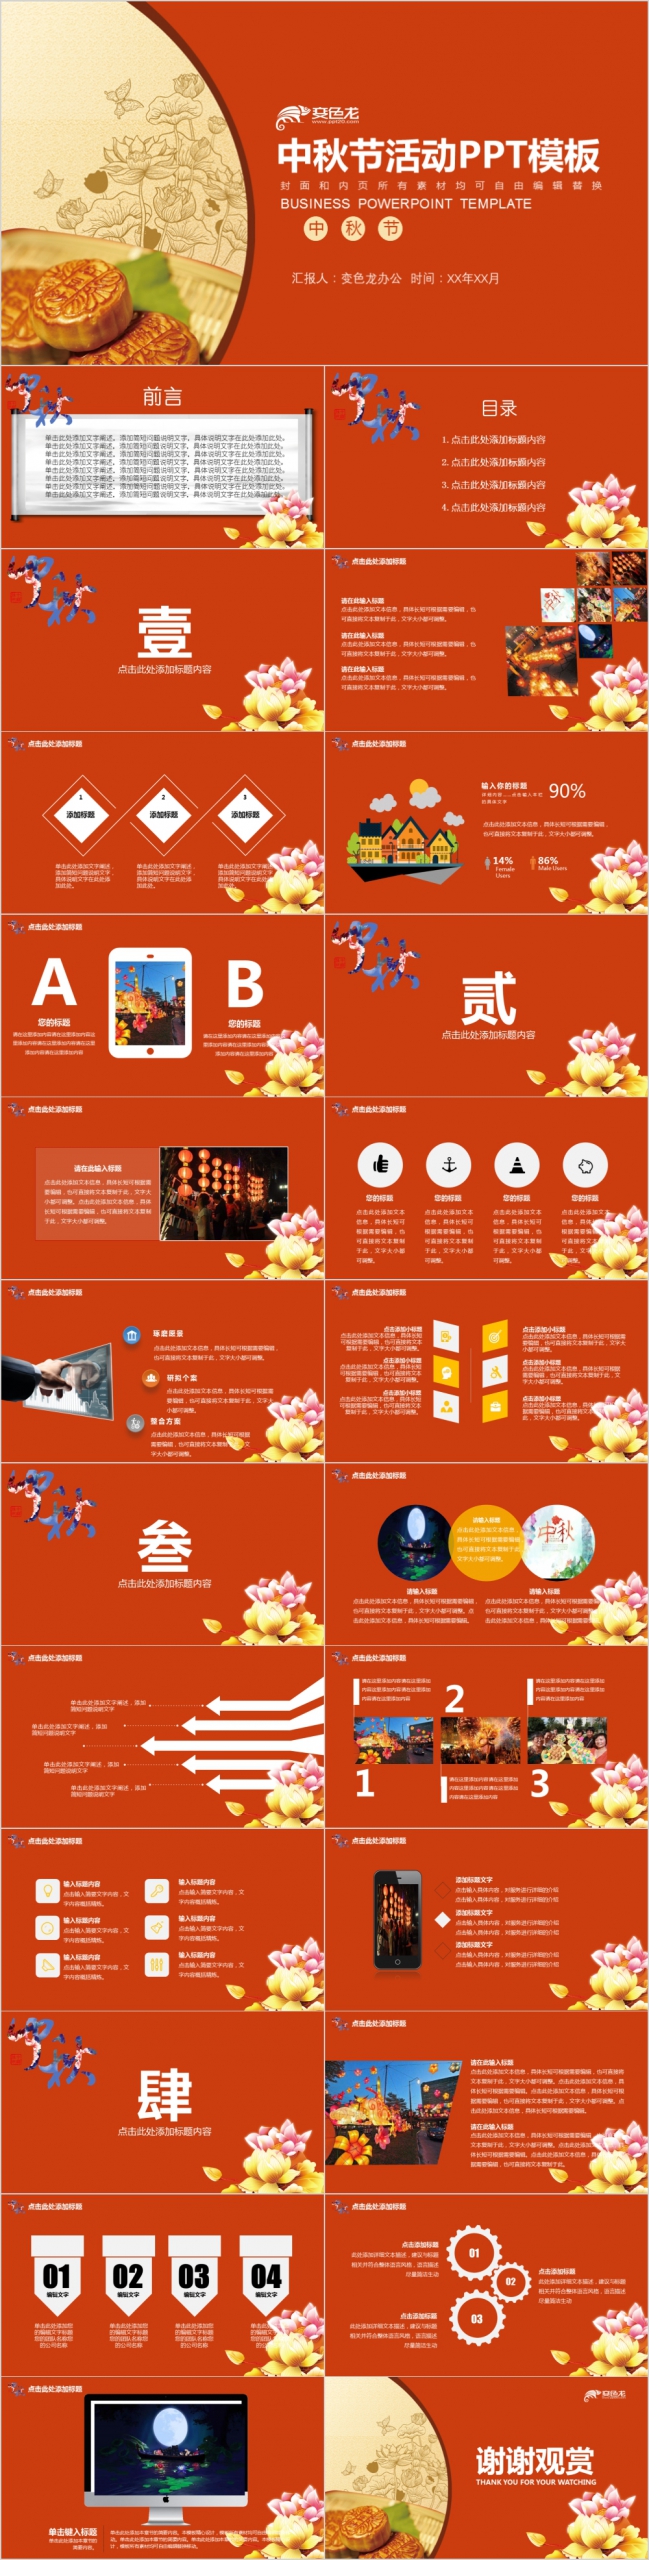 传统节日中秋节主题活动方案动态PPT模板